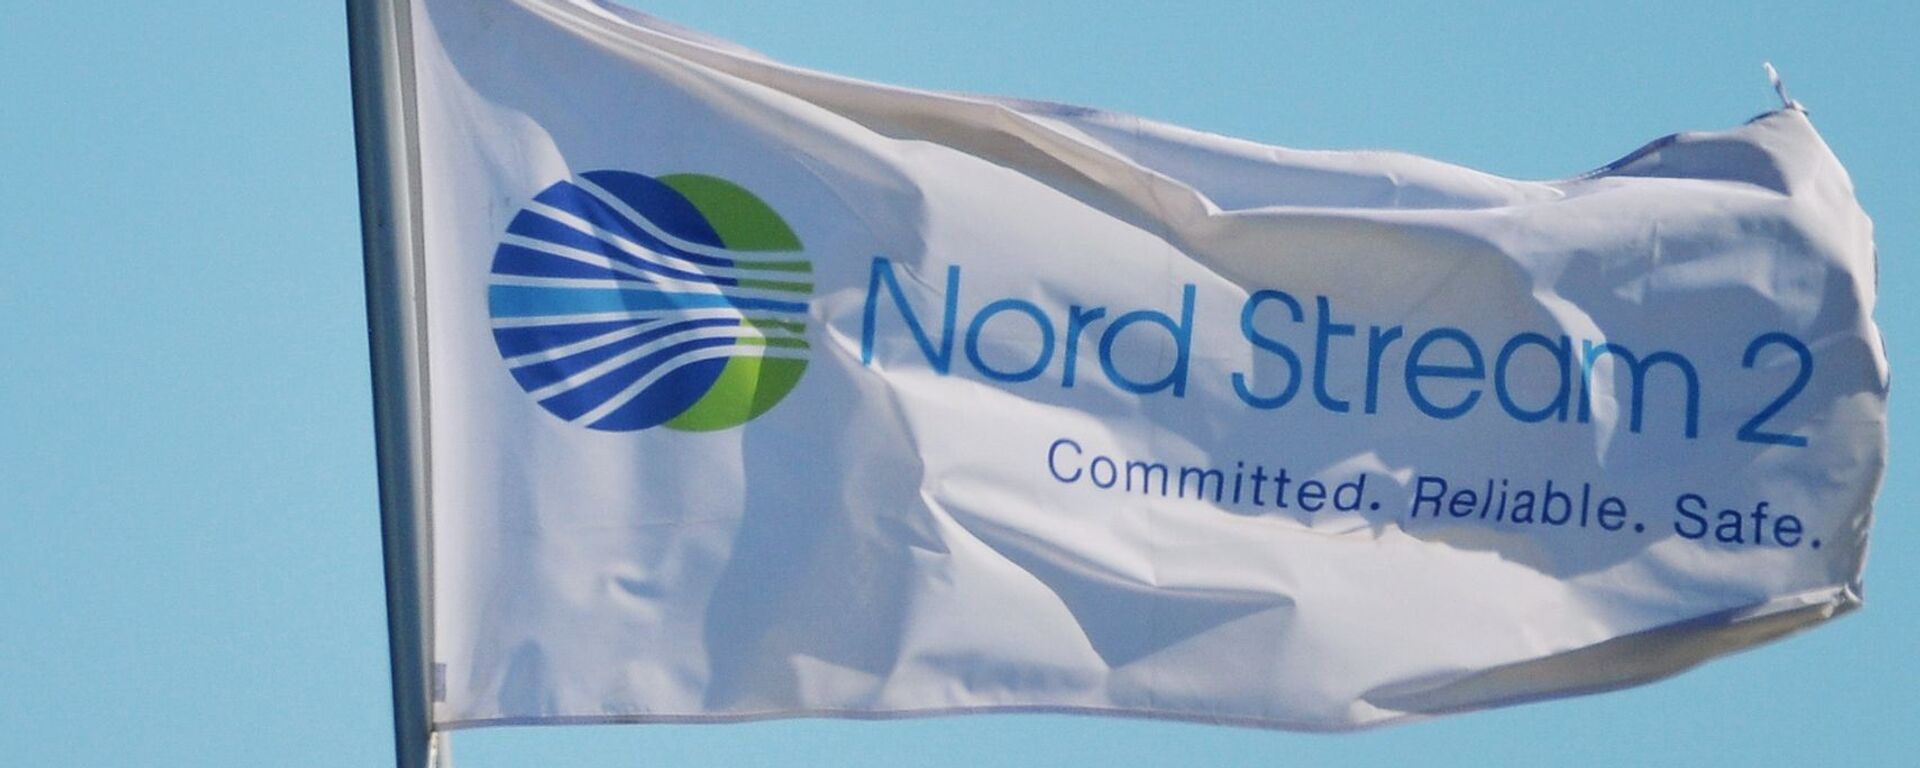  Zastava sa logom kompanije Nord strim 2 koja vodi izgradnju gasovoda Severni tok 2 u Nemačkoj - Sputnik Srbija, 1920, 14.10.2021